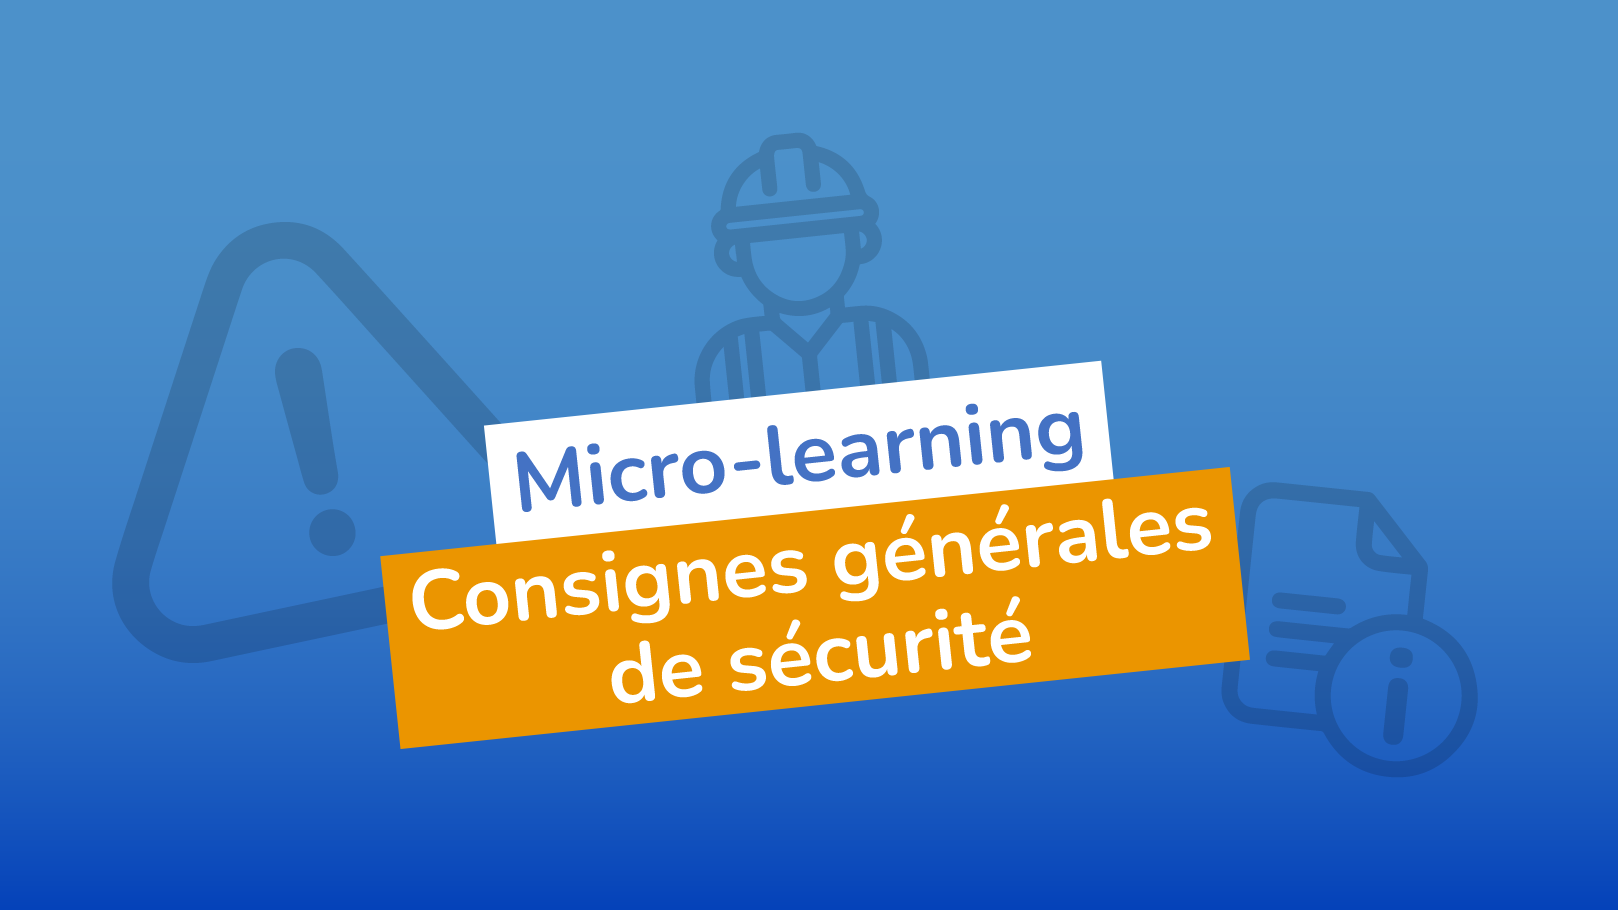 Micro-learning Consignes générales de sécurité